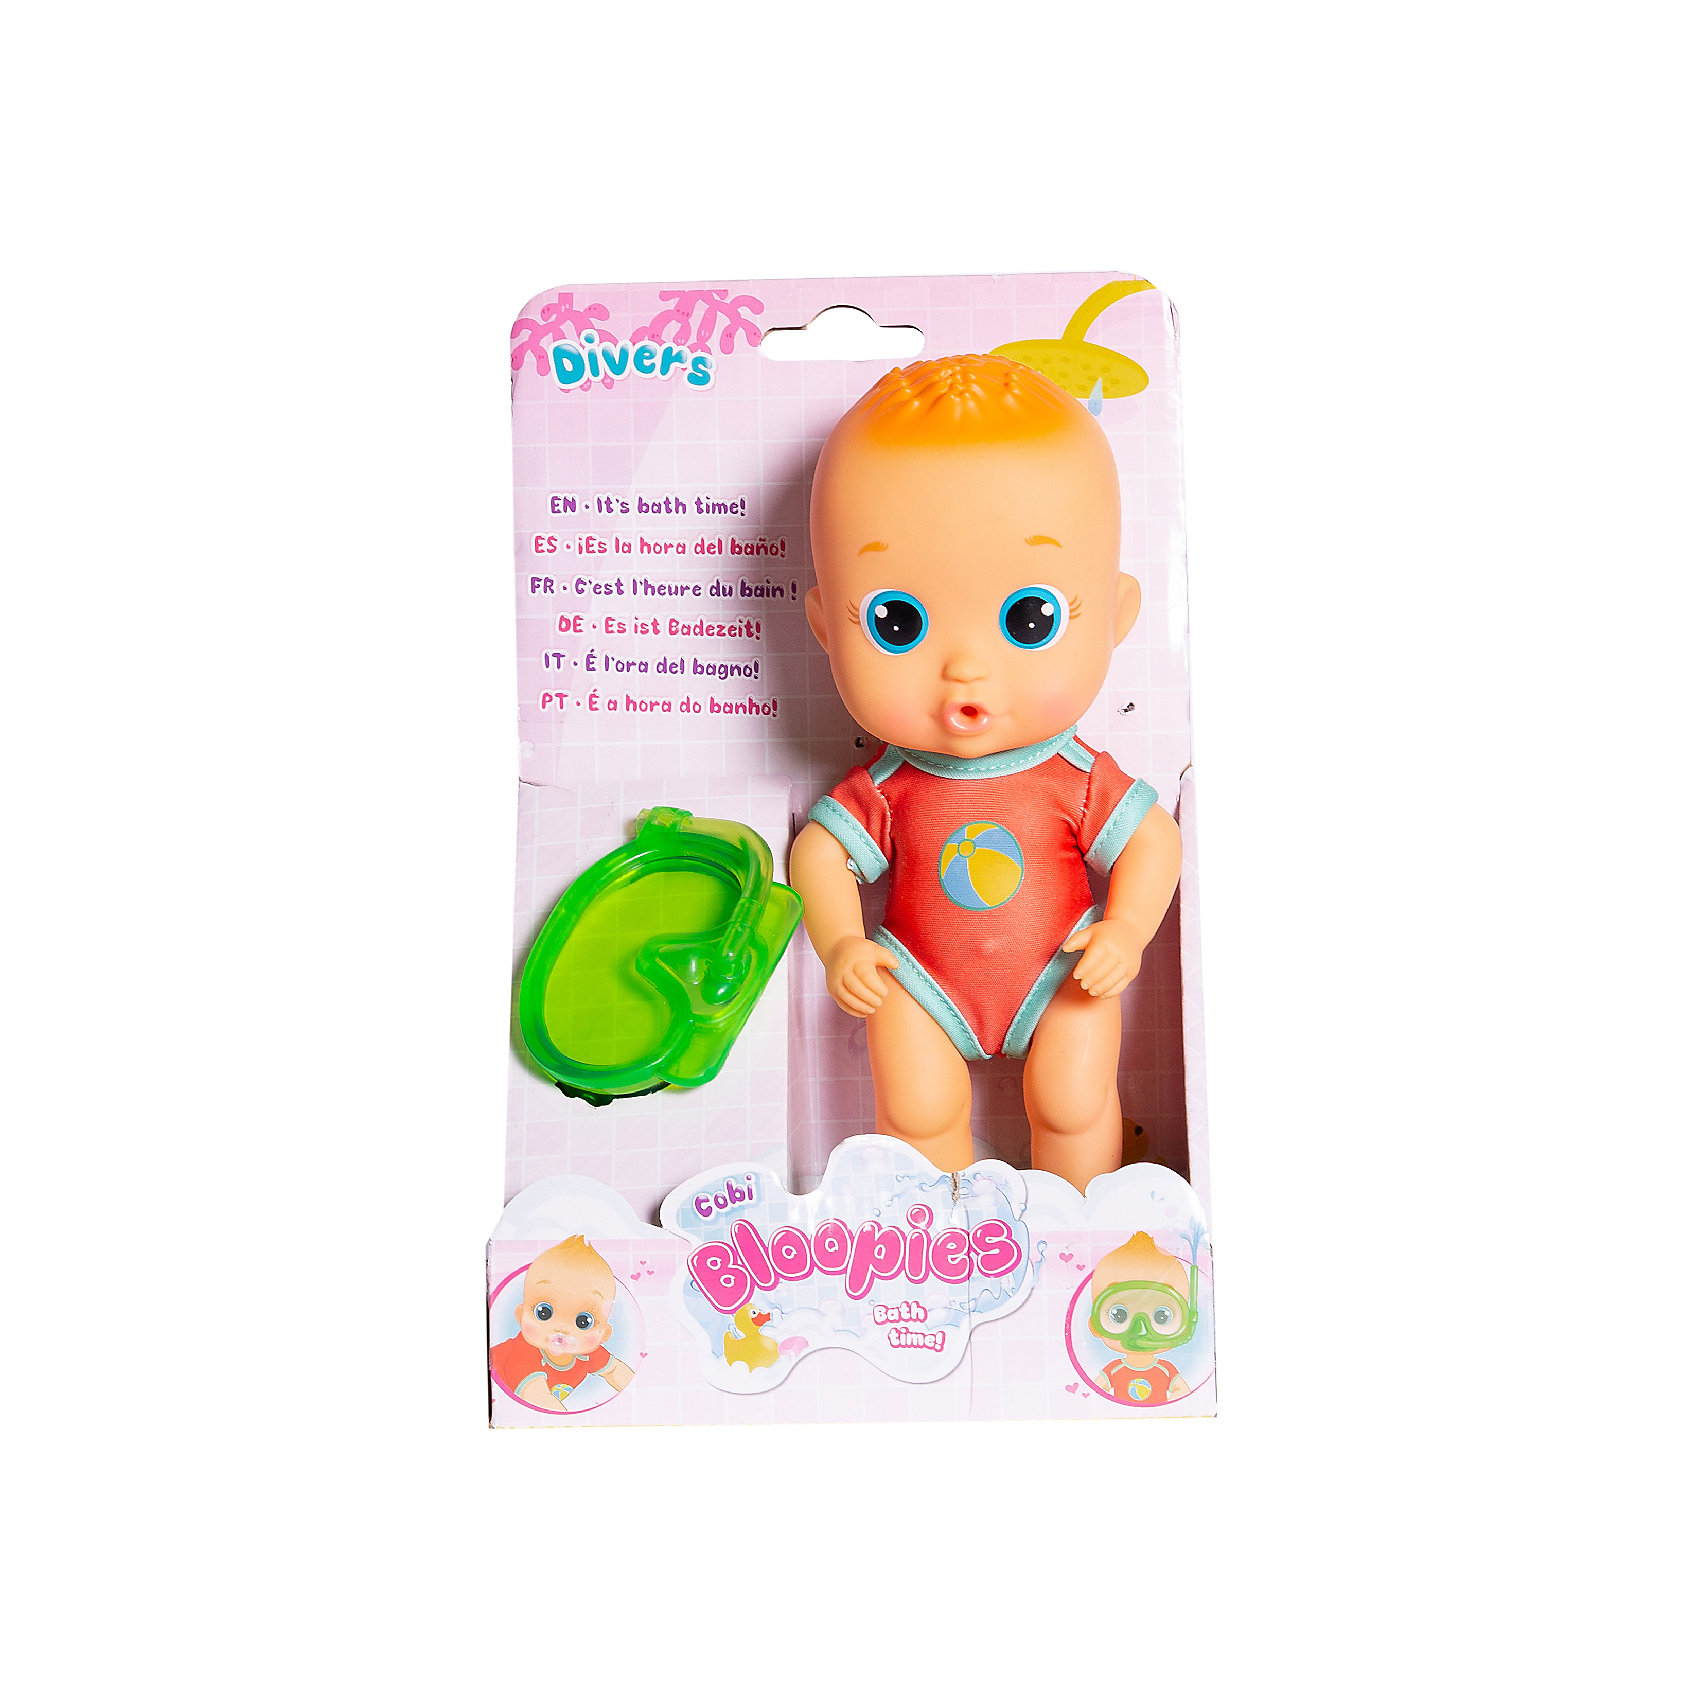 Кукла Коби Bloopies IMC Toys 14752987